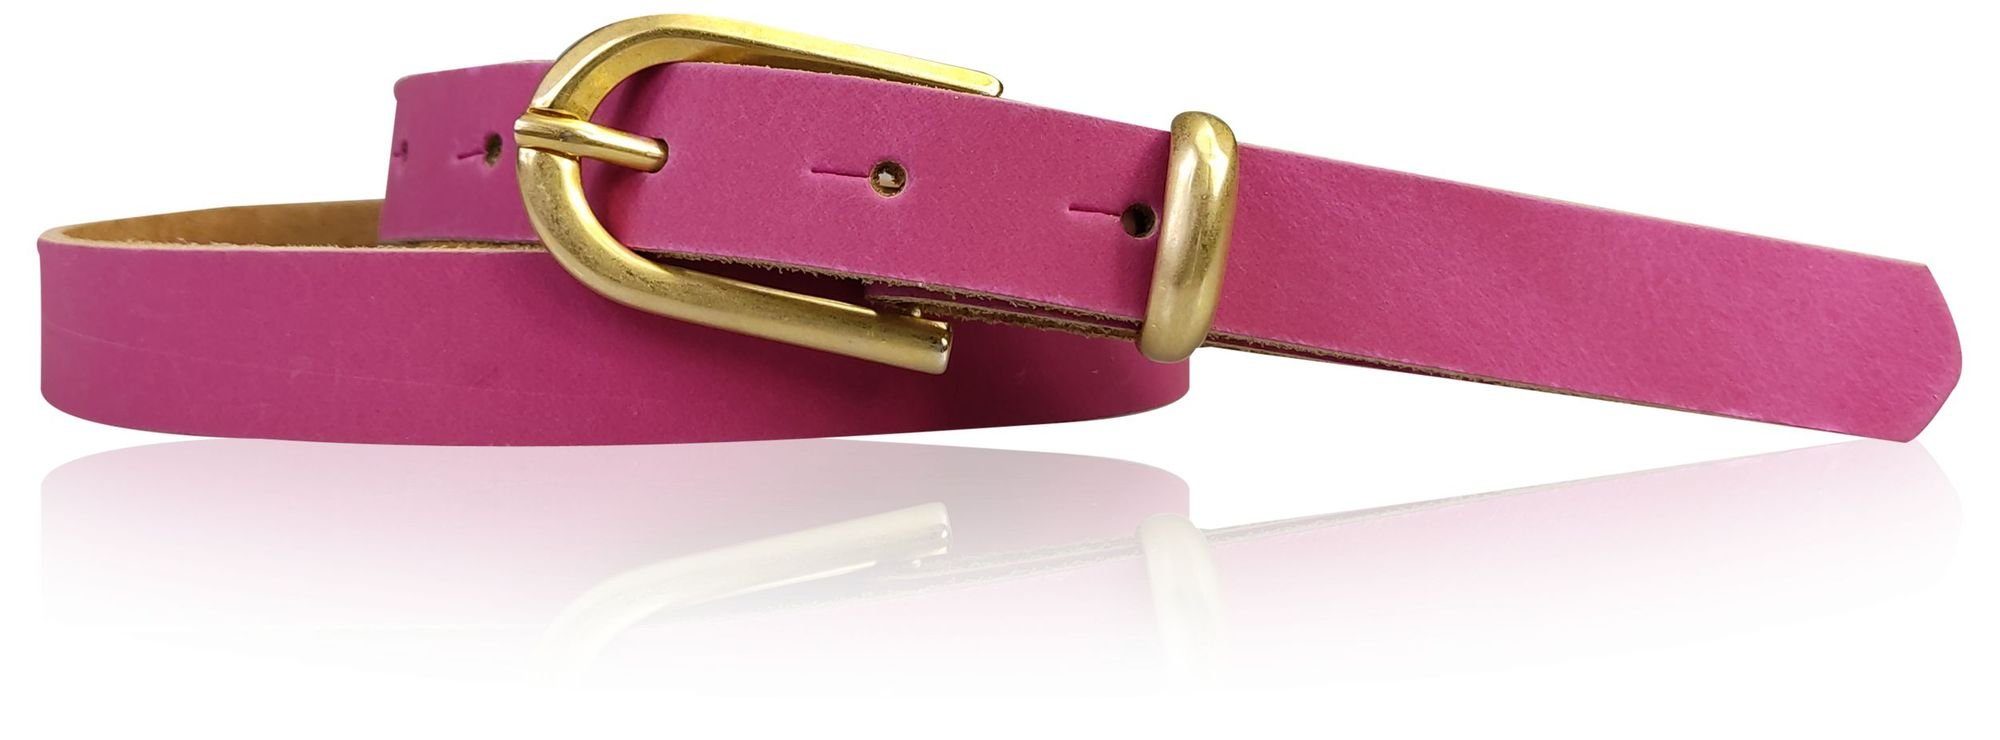 FRONHOFER Taillengürtel 18690 schmaler 2 cm Damengürtel mit matt goldener Schnalle & Schlaufe Pink